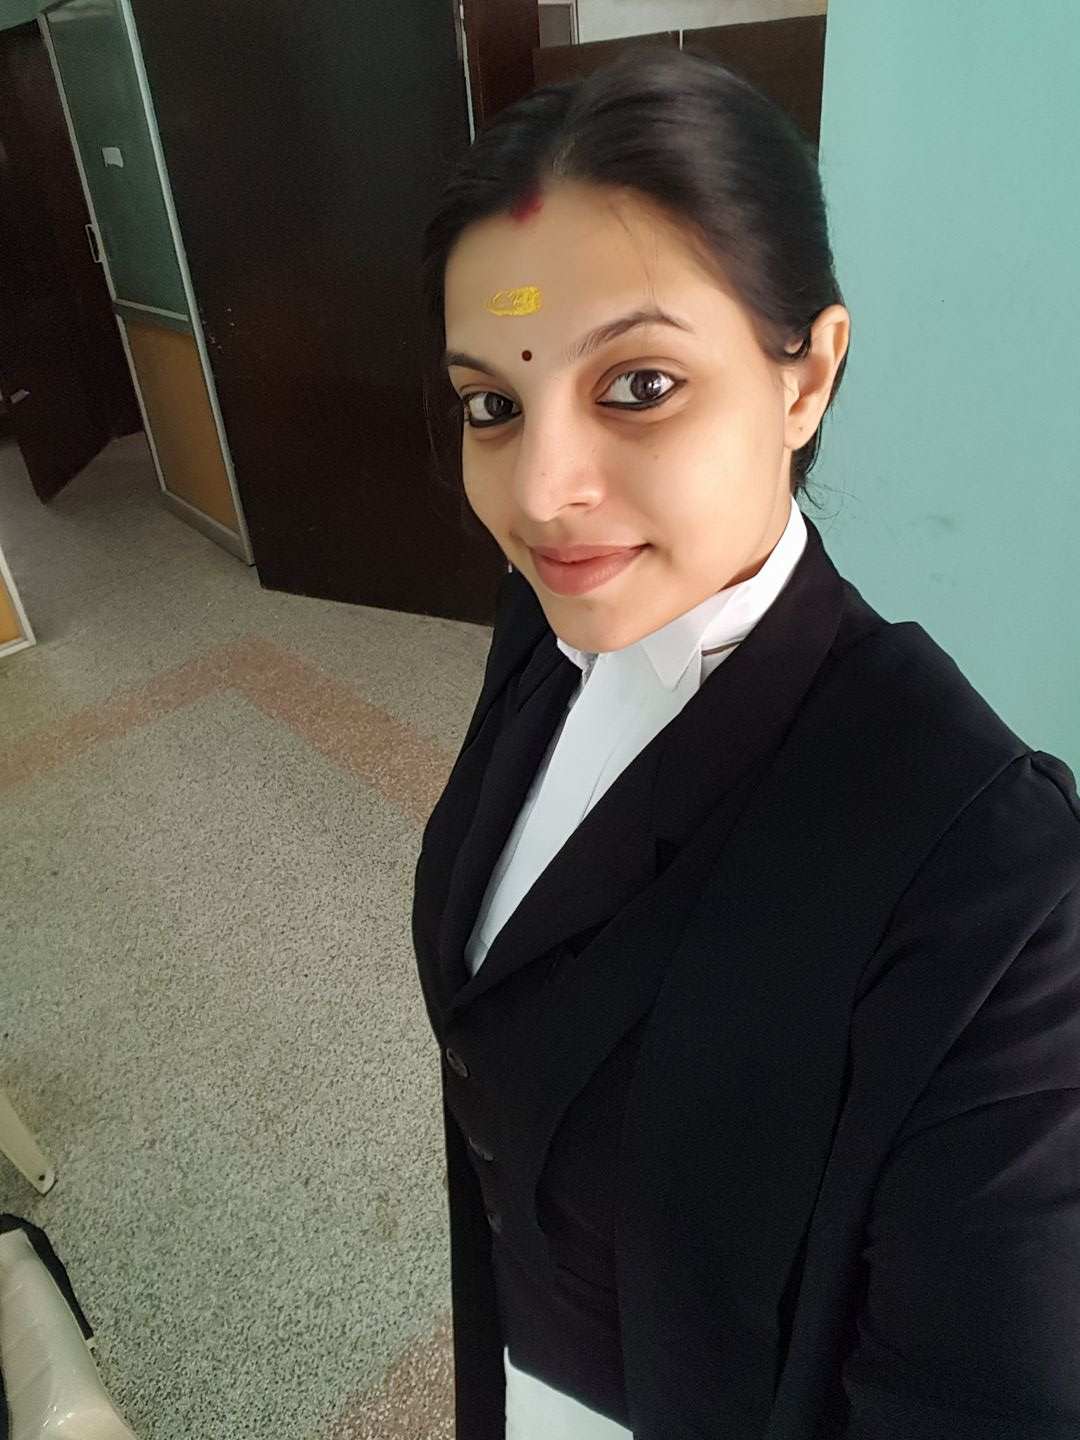 Santhi Mayadevi during her law practice